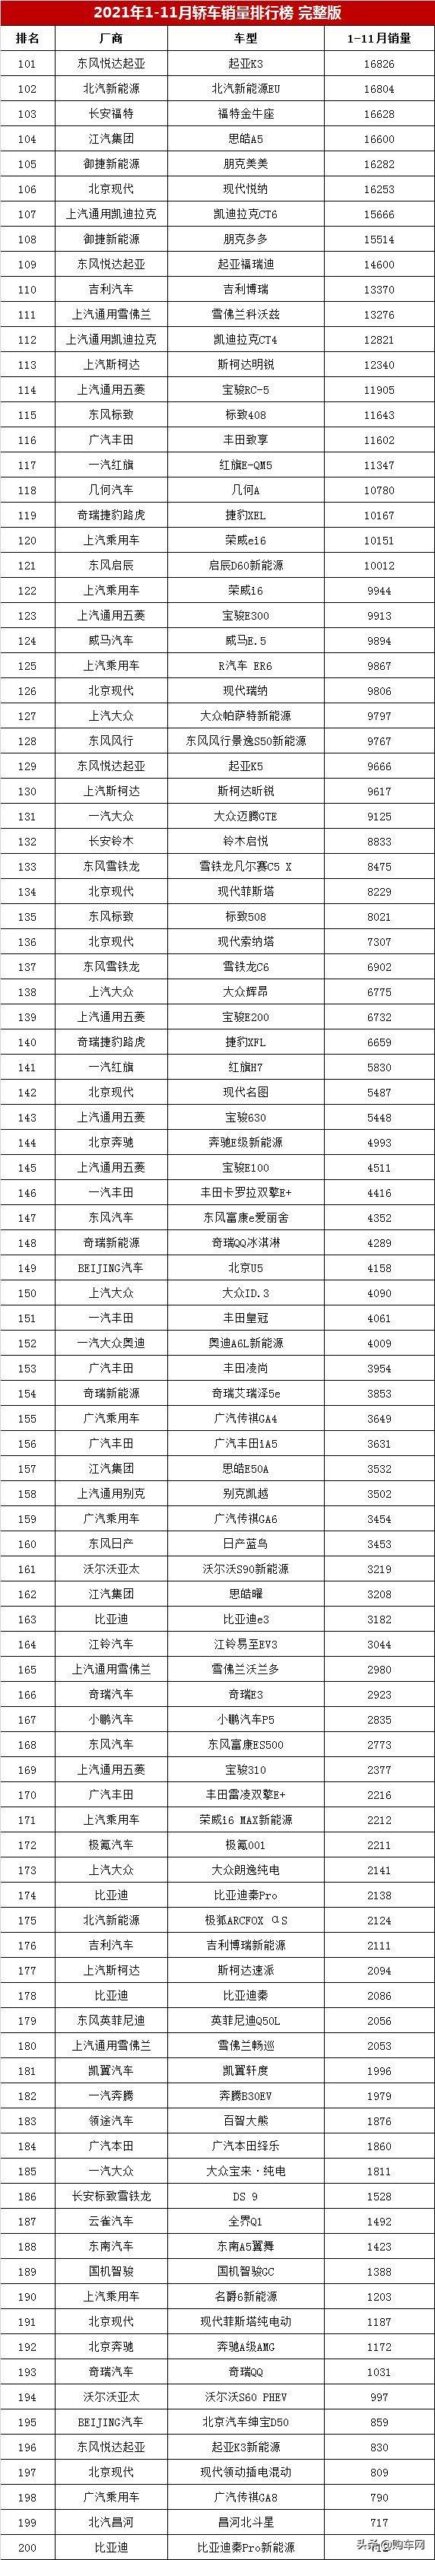 中国小汽车销售排行榜(吉利10万以内轿车)插图9